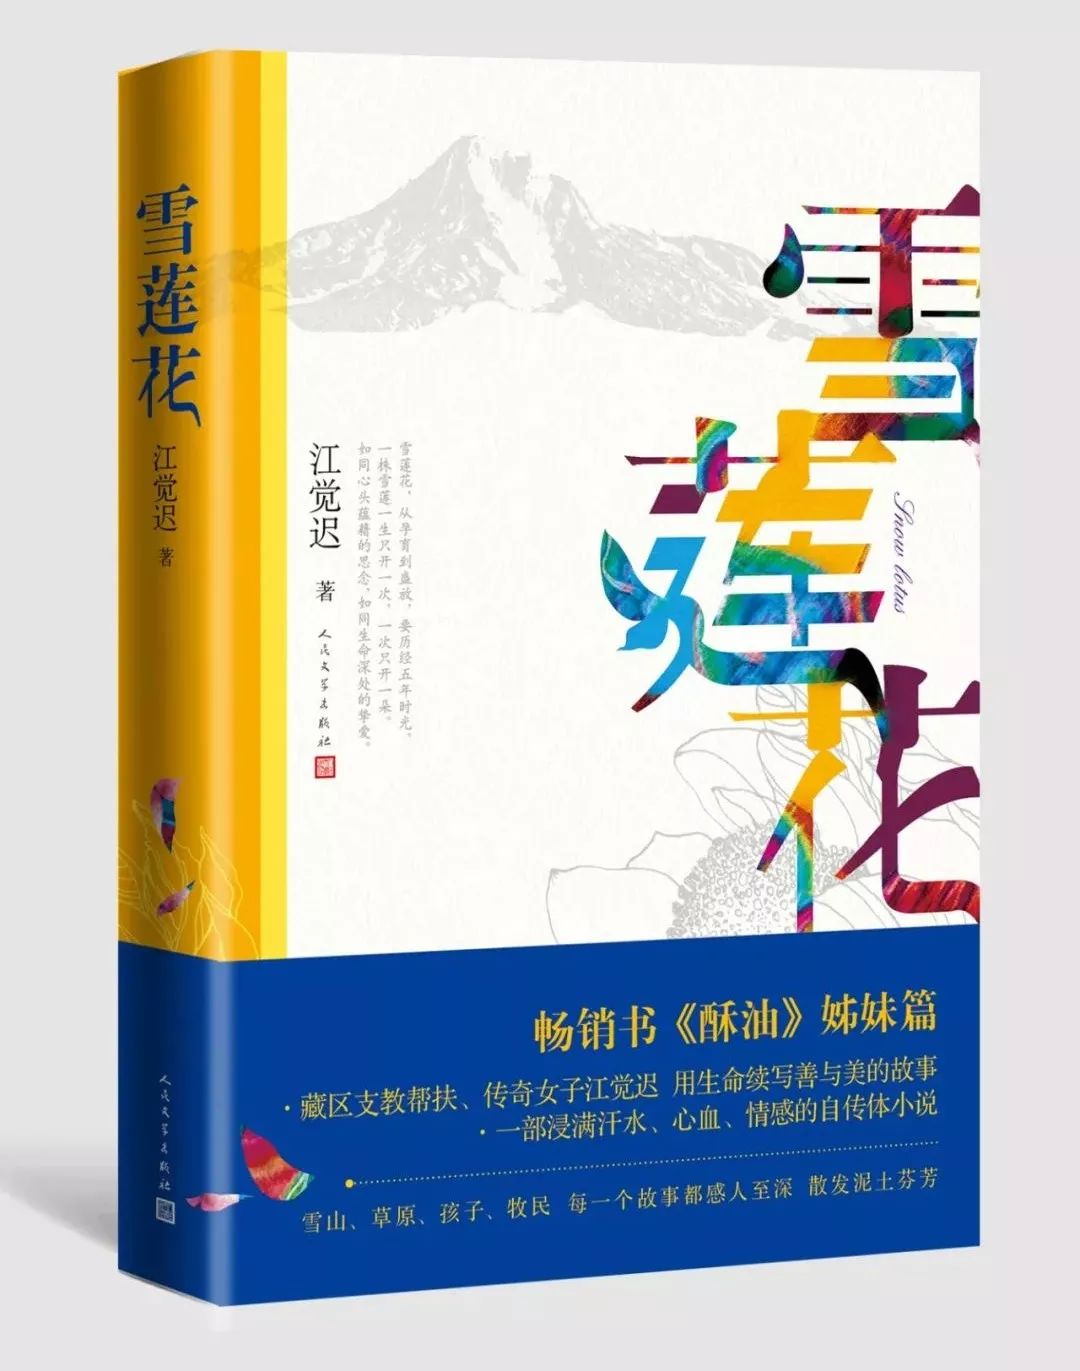 2019文学书籍排行榜_上海书展 这些原创文学作品,值得一读